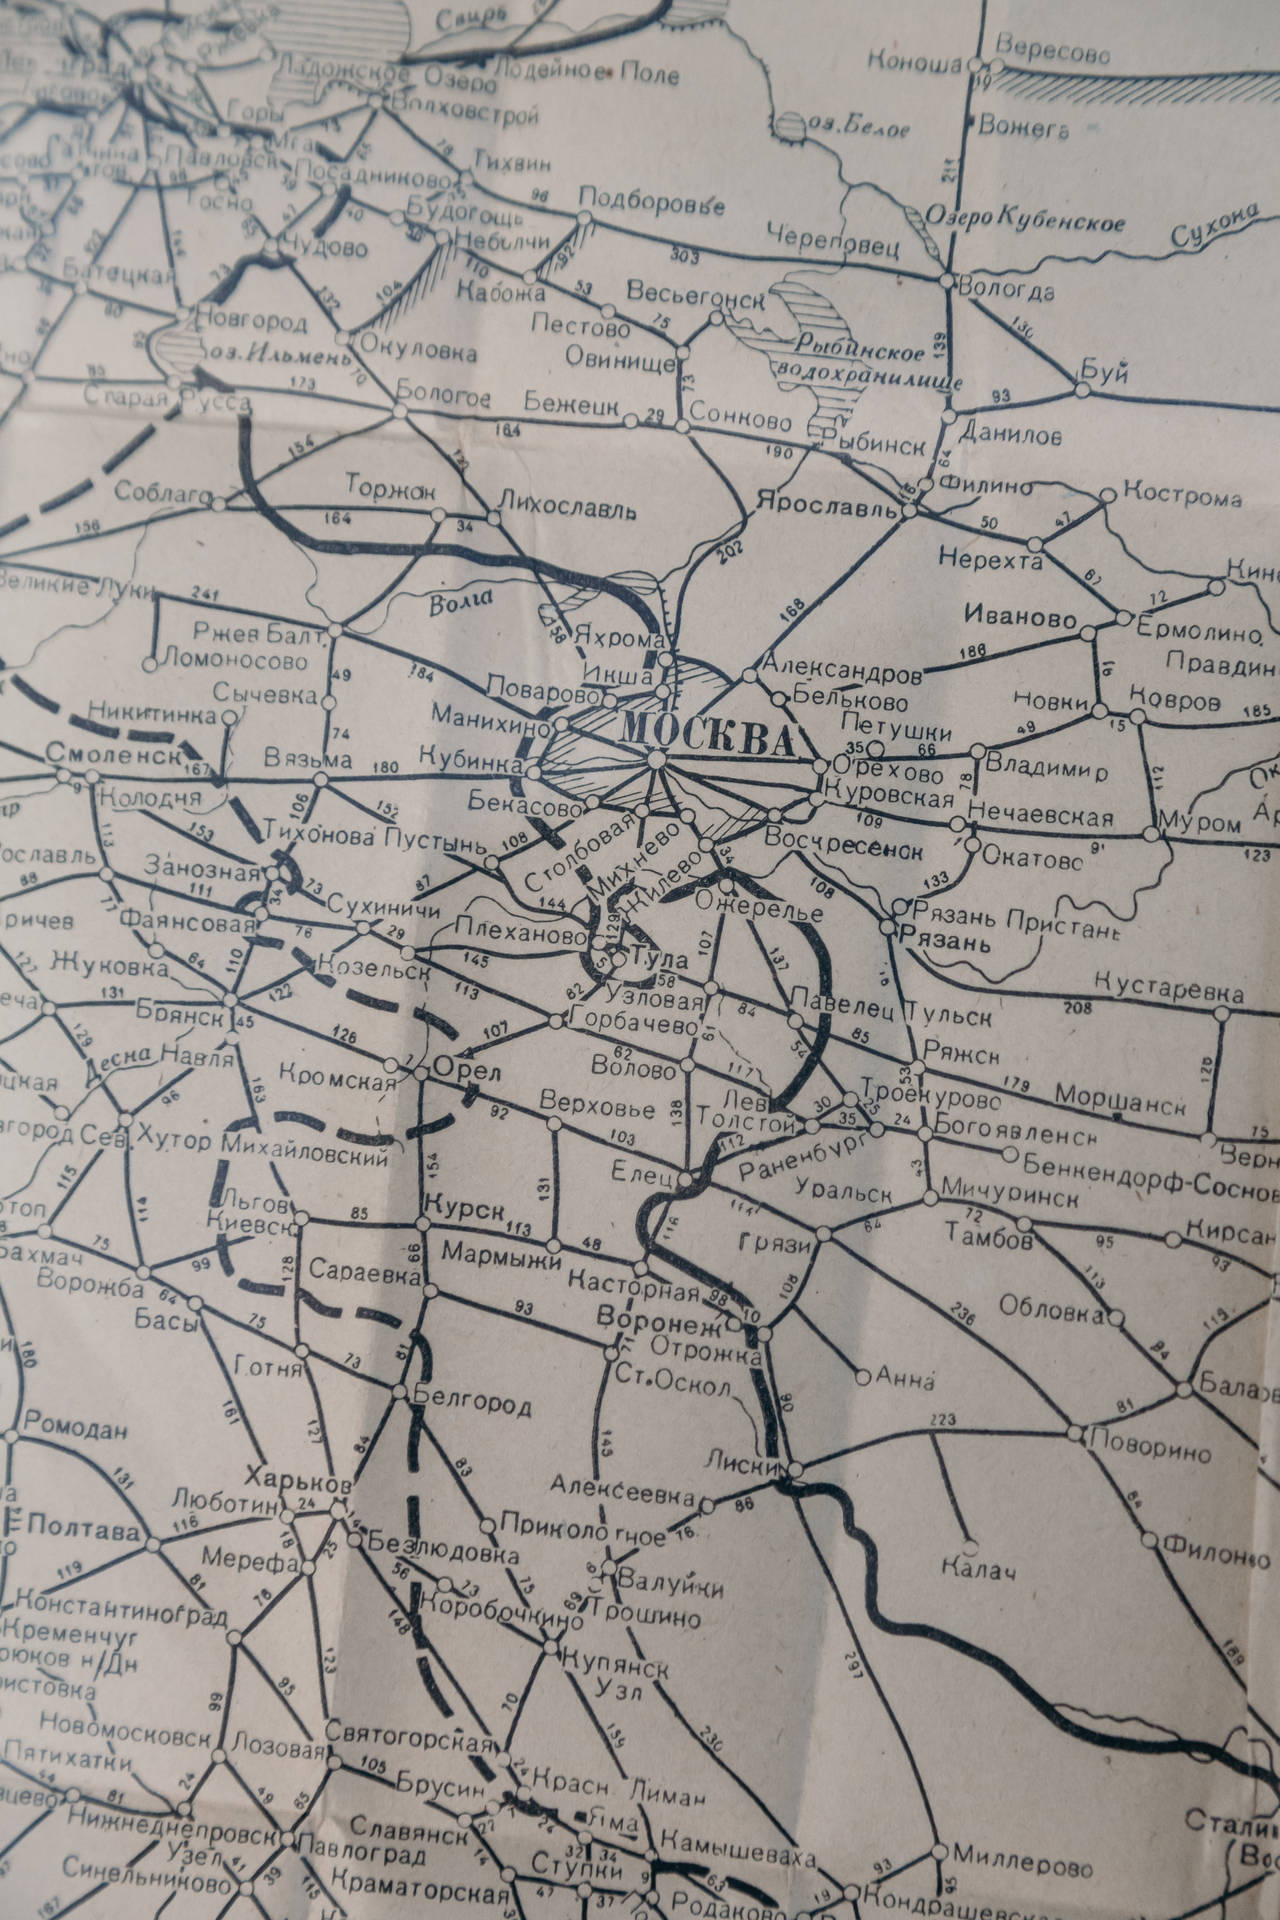 Topografischekarte Von Moskau Wallpaper